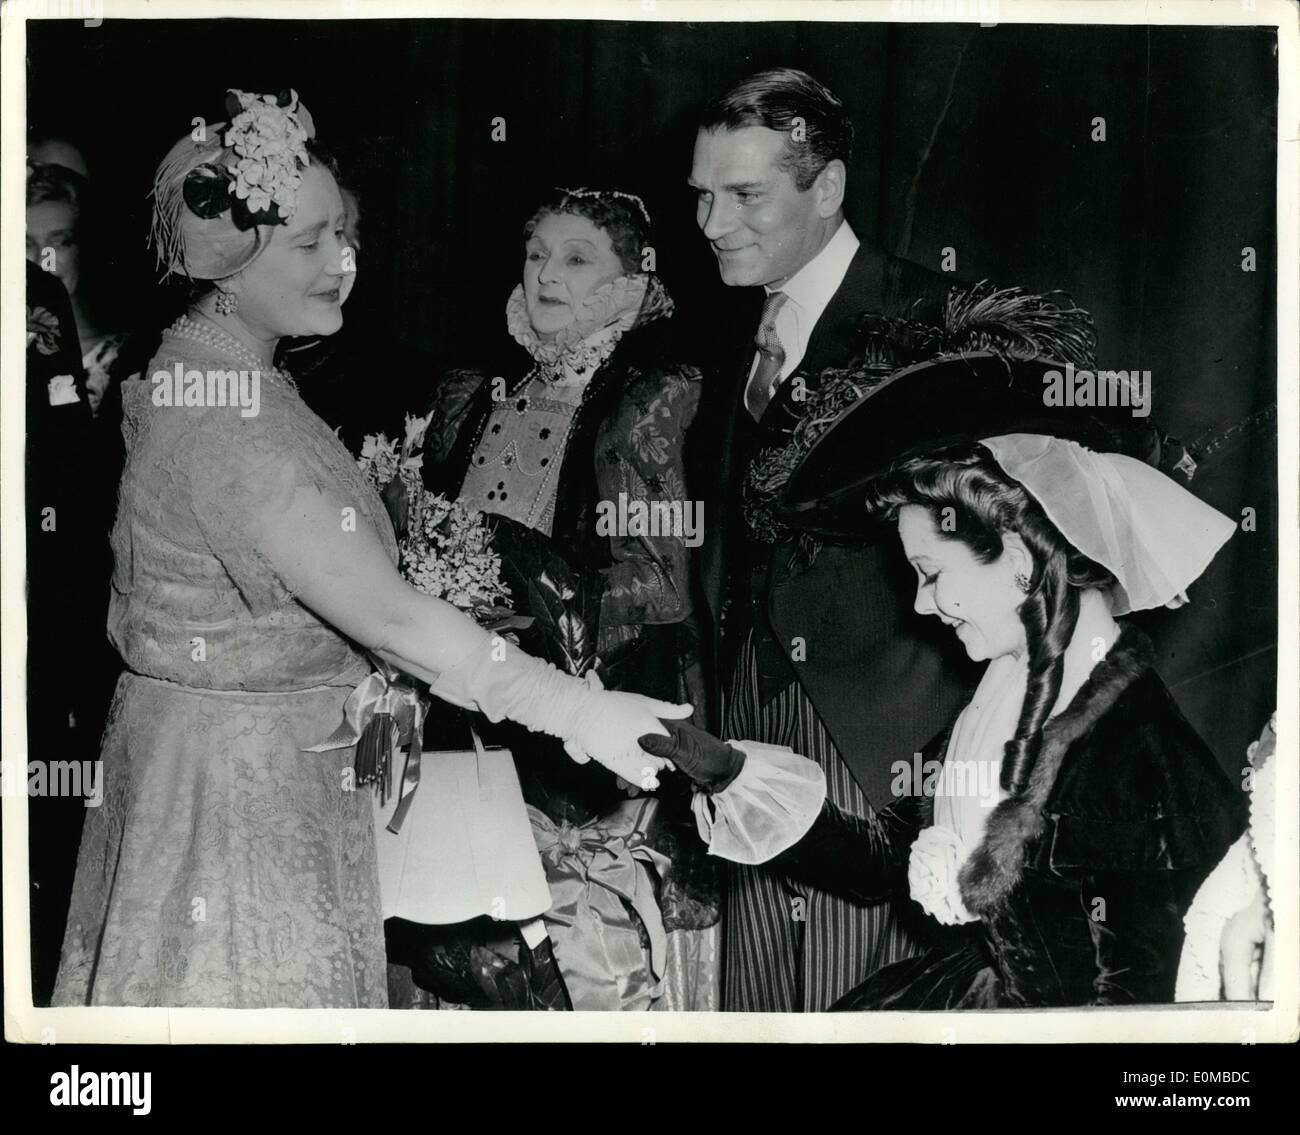 Juin 06, 1954 - Révérence pour la Reine Mère : Toujours en costume, l'actrice Vivien Leigh pour curtseys La reine Elizabeth la reine mère, à la variété du Club toutes les étoiles Matinee au Her Majesty's Theatre, Londres, hier. À côté de Vivien Leigh sont son mari, Sir Laurence Olivier, et Dame Sybil Thorndike. La matinee commémoré trois anniversaires - la cinquantième année depuis la fondation de la Royal Academy of Dramatic Art, Dame Sybil's golden jubilee sur la scène ; et la naissance centenaire de Sir Herbert Beerbohm Tree, fondateur de la RADA. Banque D'Images